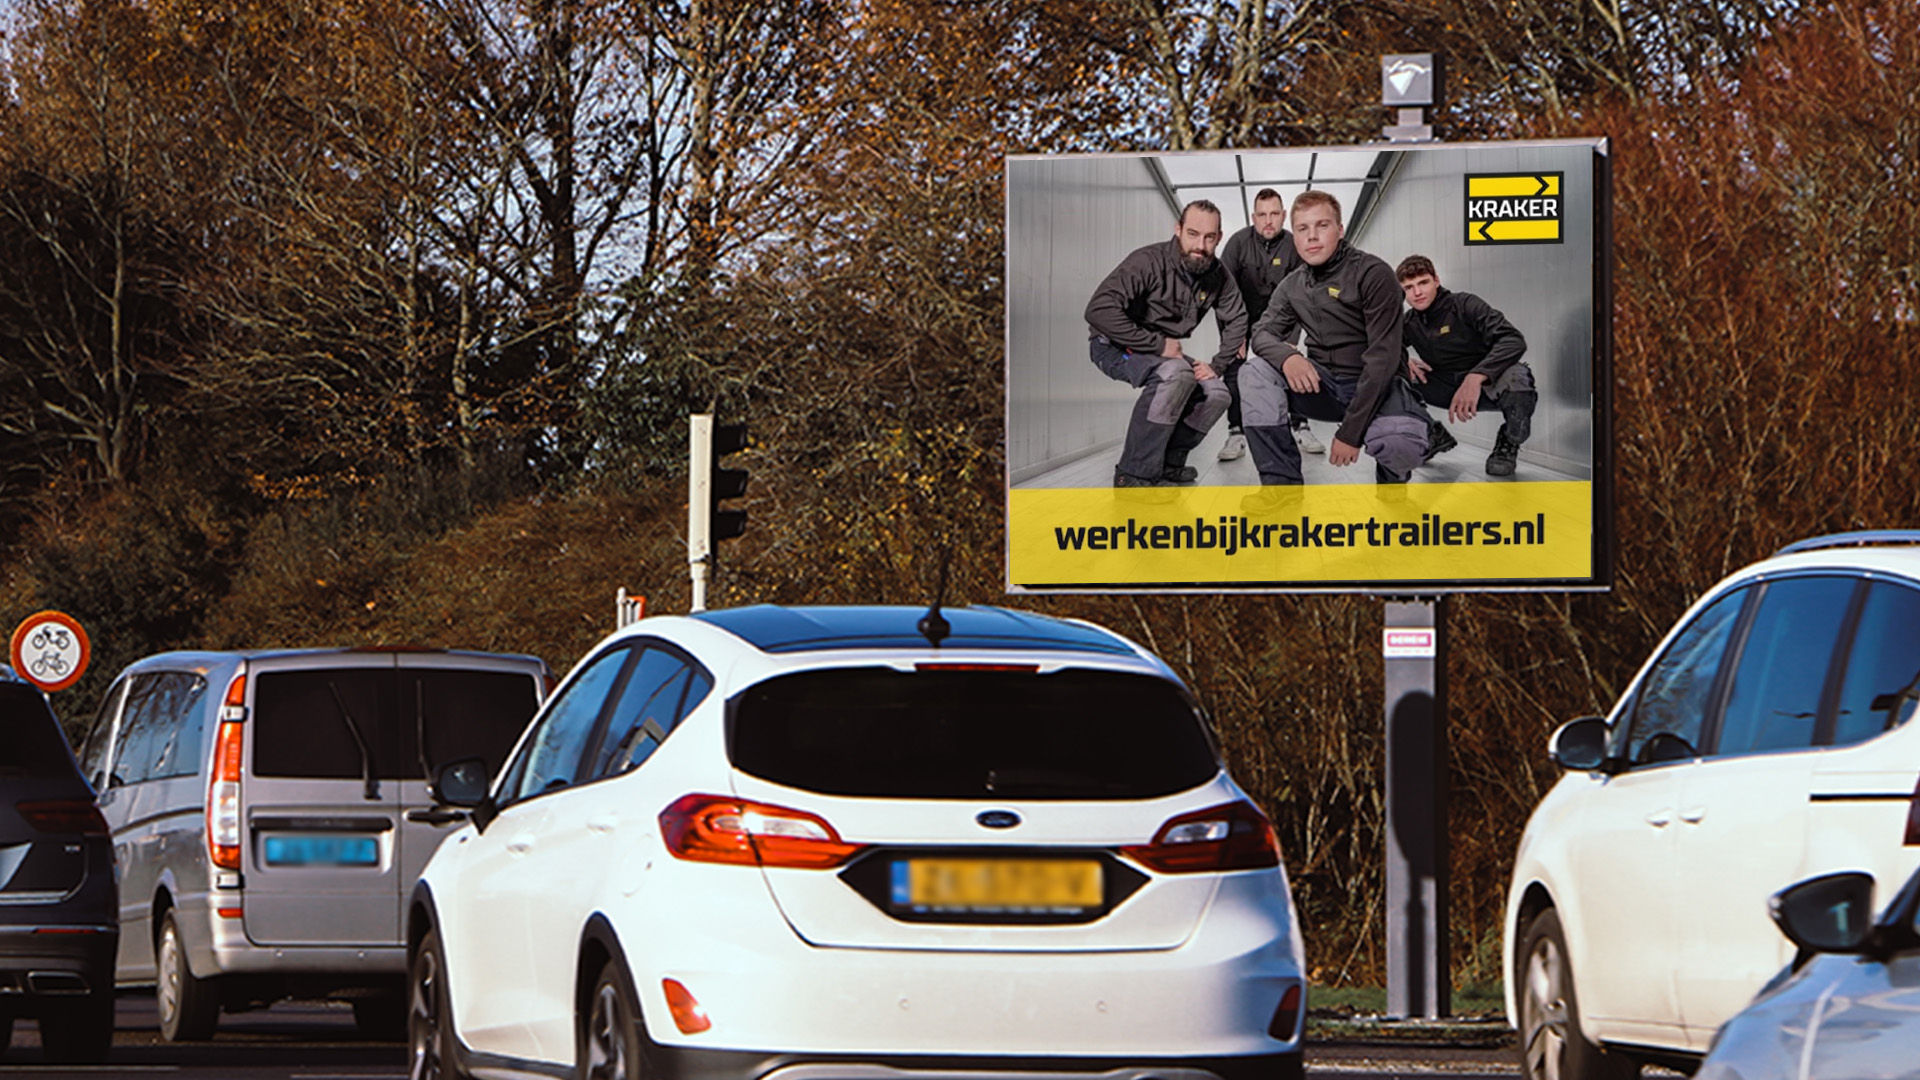 Kraker Trailers trekt nieuw personeel via digitale billboards in Terneuzen